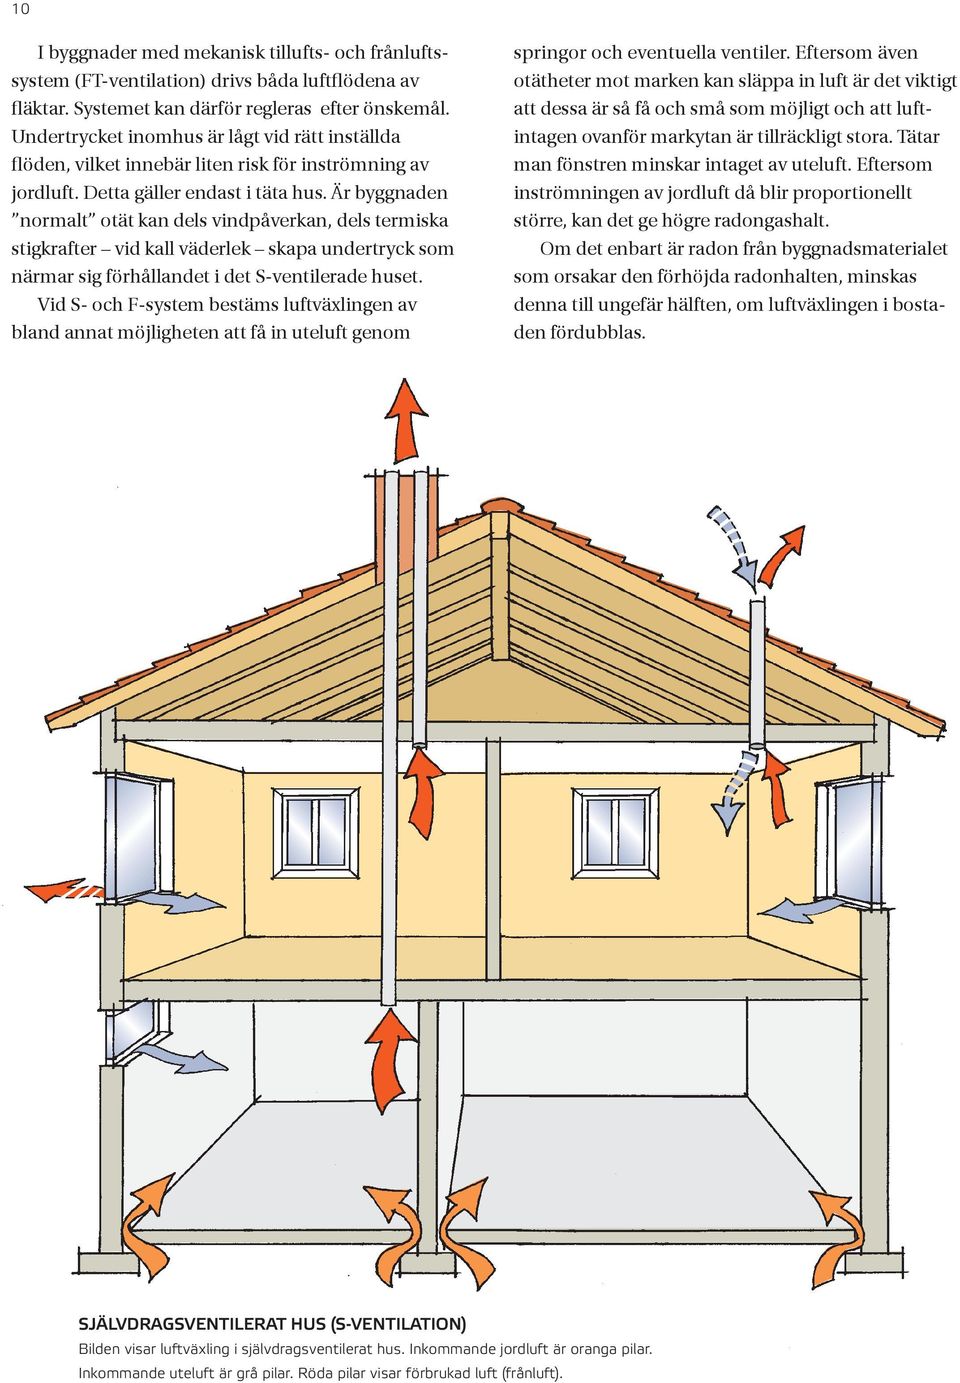 Är byggnaden normalt otät kan dels vindpåverkan, dels termiska stigkrafter vid kall väderlek skapa undertryck som närmar sig förhållandet i det S-ventilerade huset.